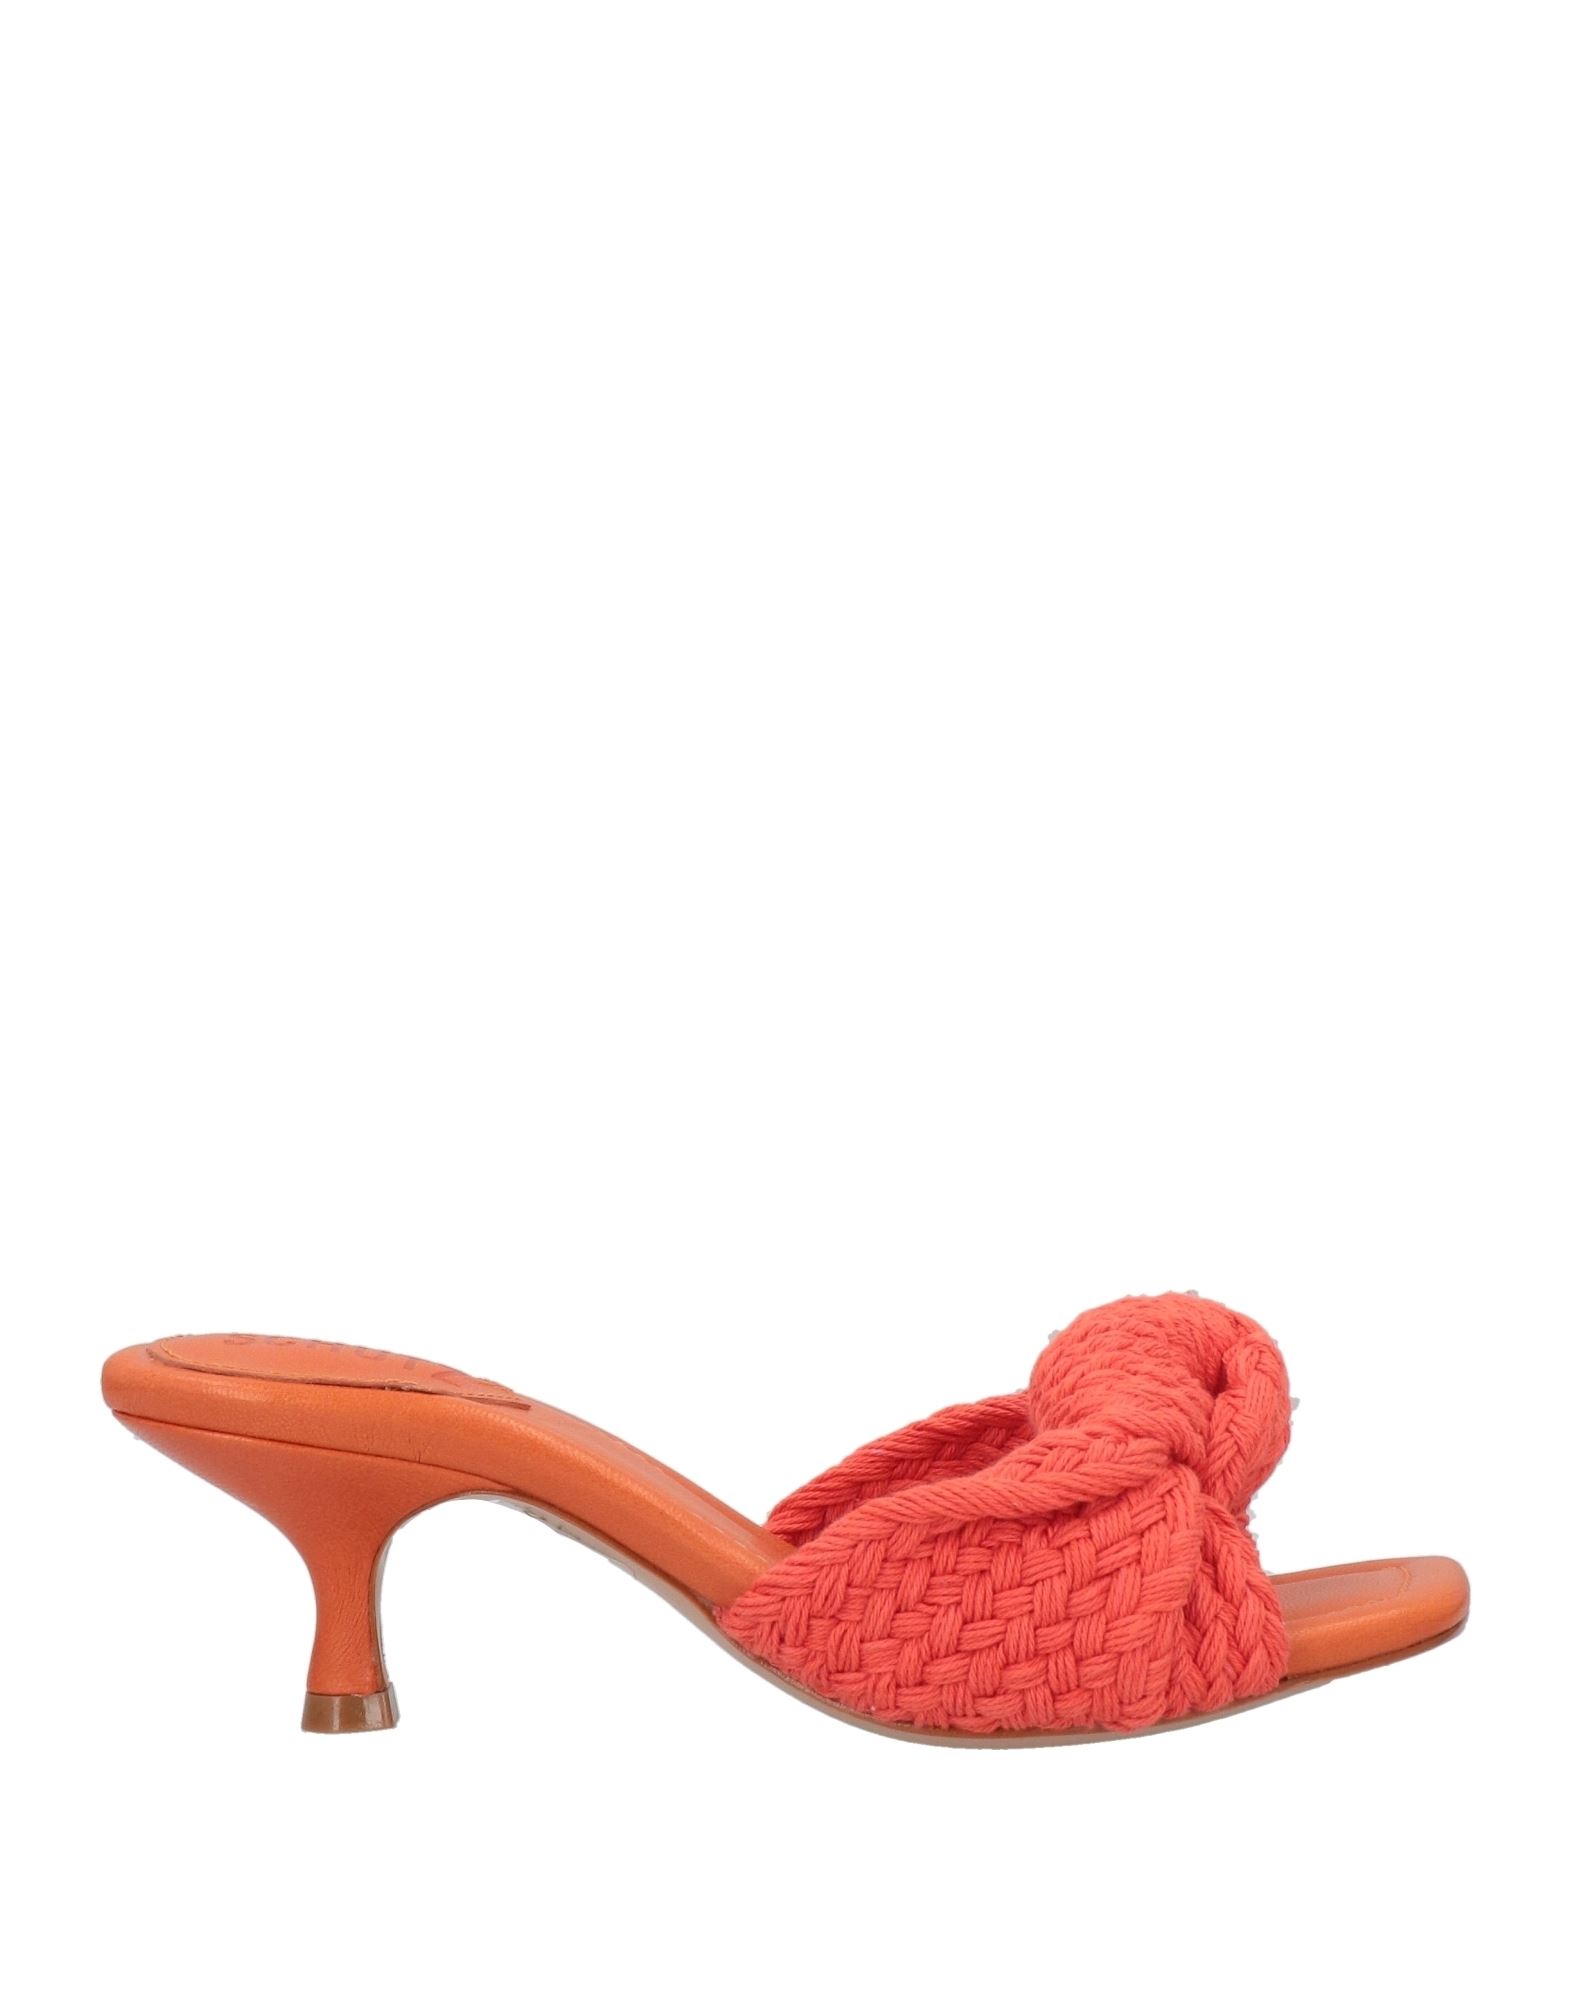 Schutz Sandals In Orange